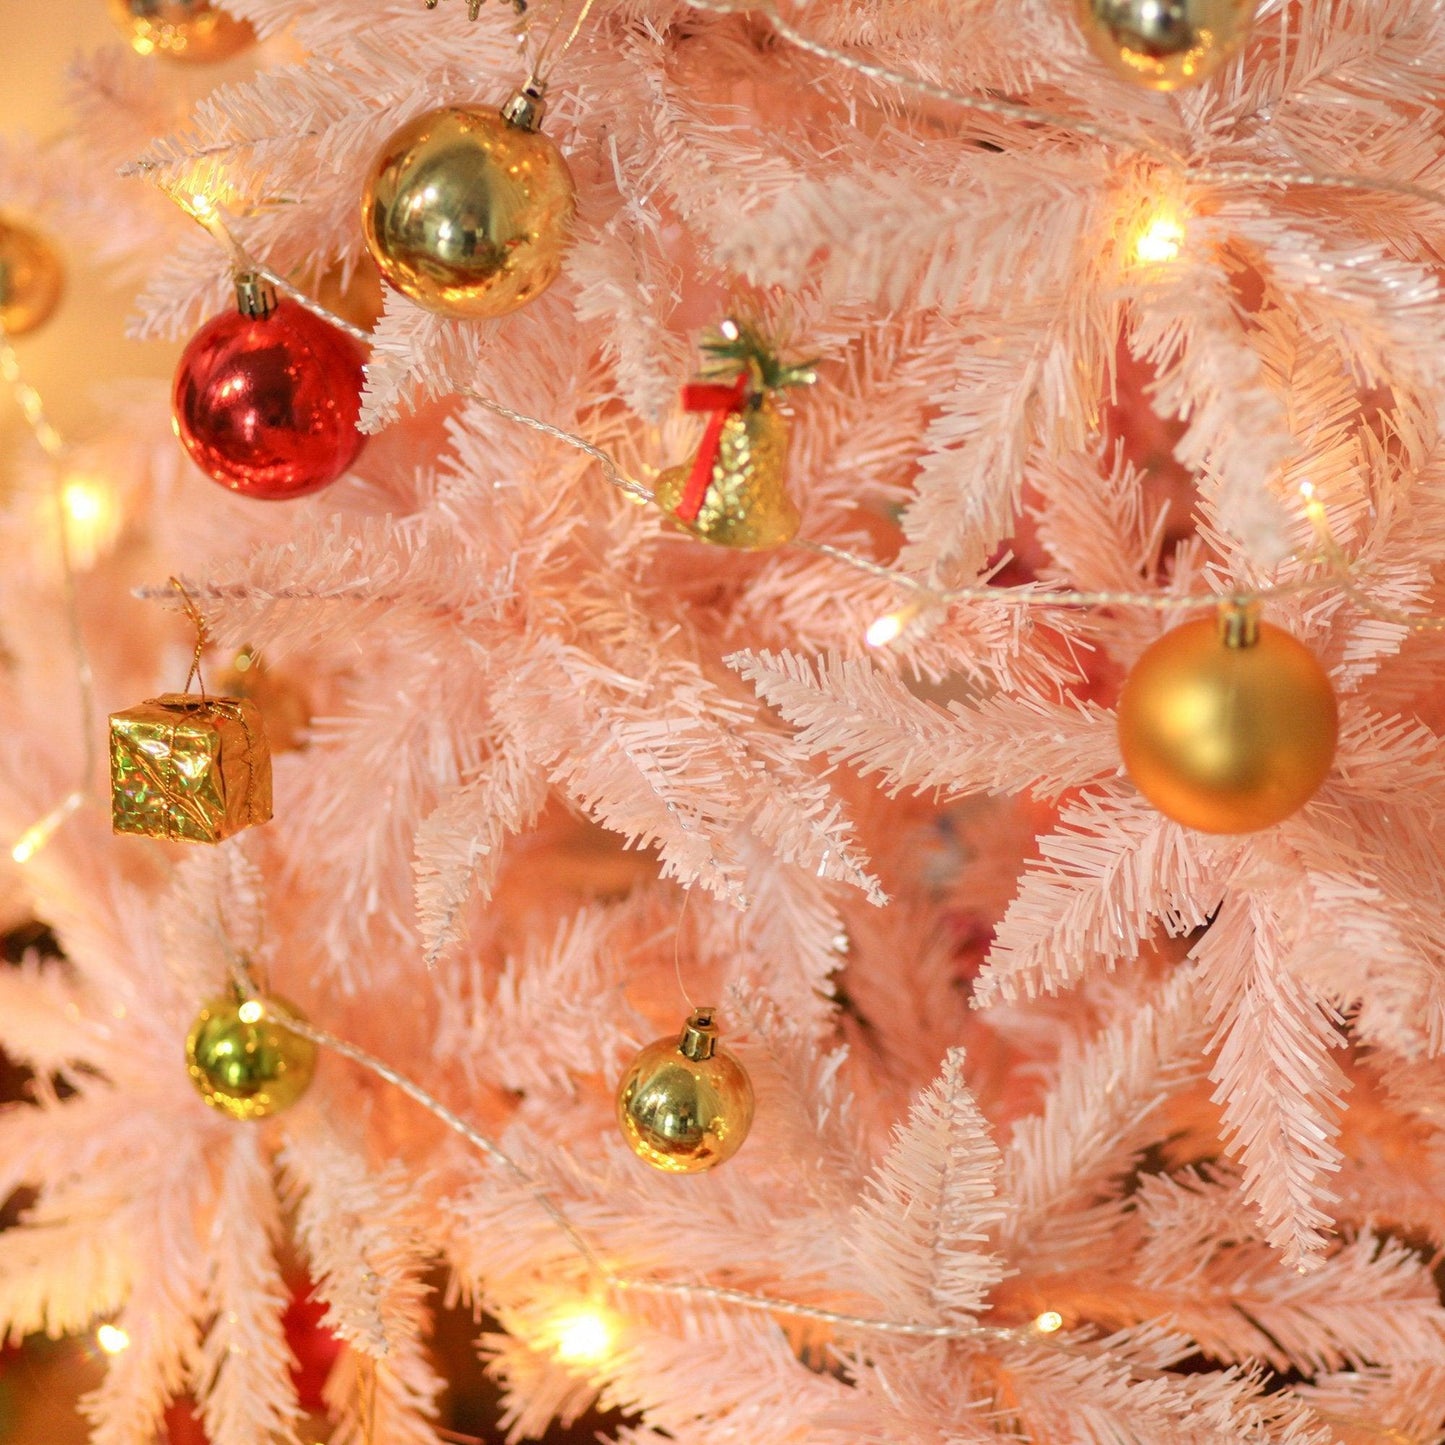 homcom 5ft White and Pink Artificial Christmas Tree - ALL4U RETAILER LTD